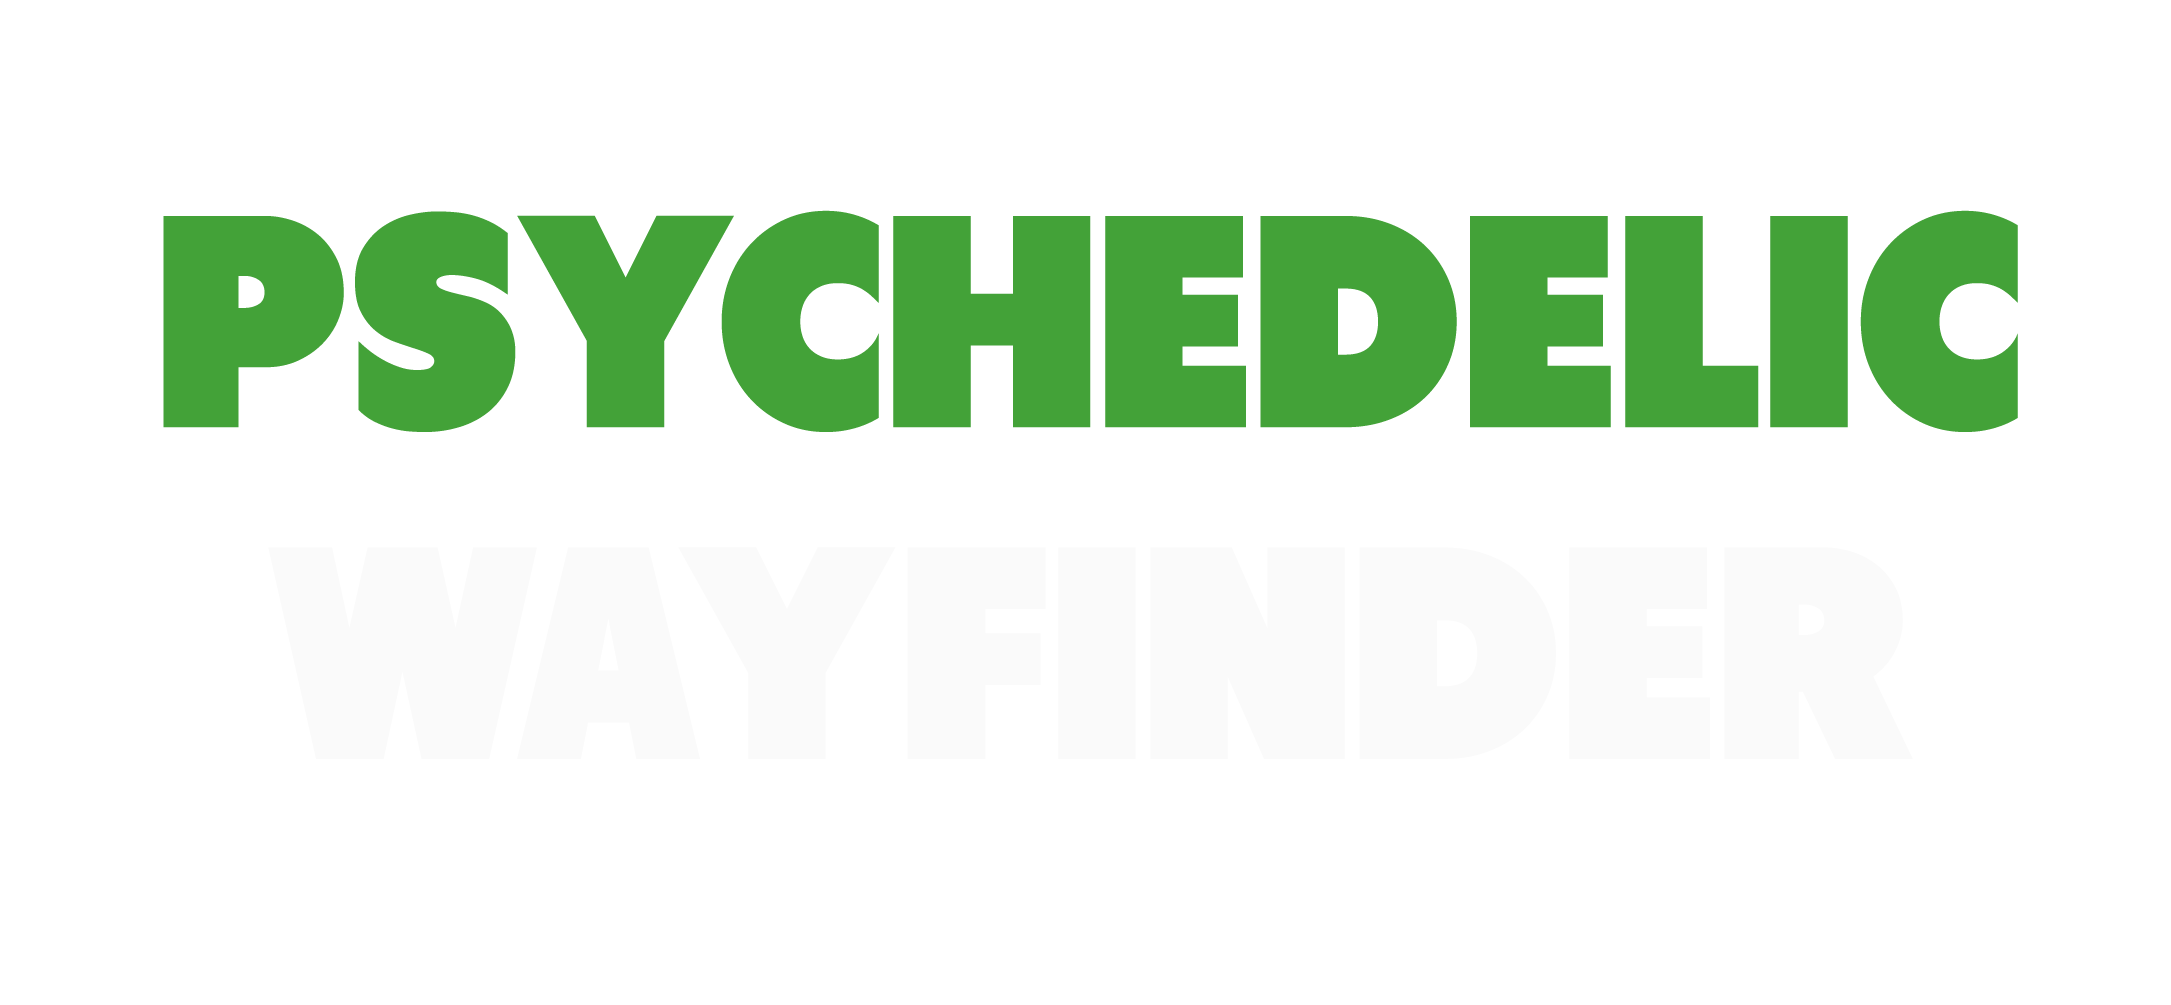 Psychedelic Wayfinder